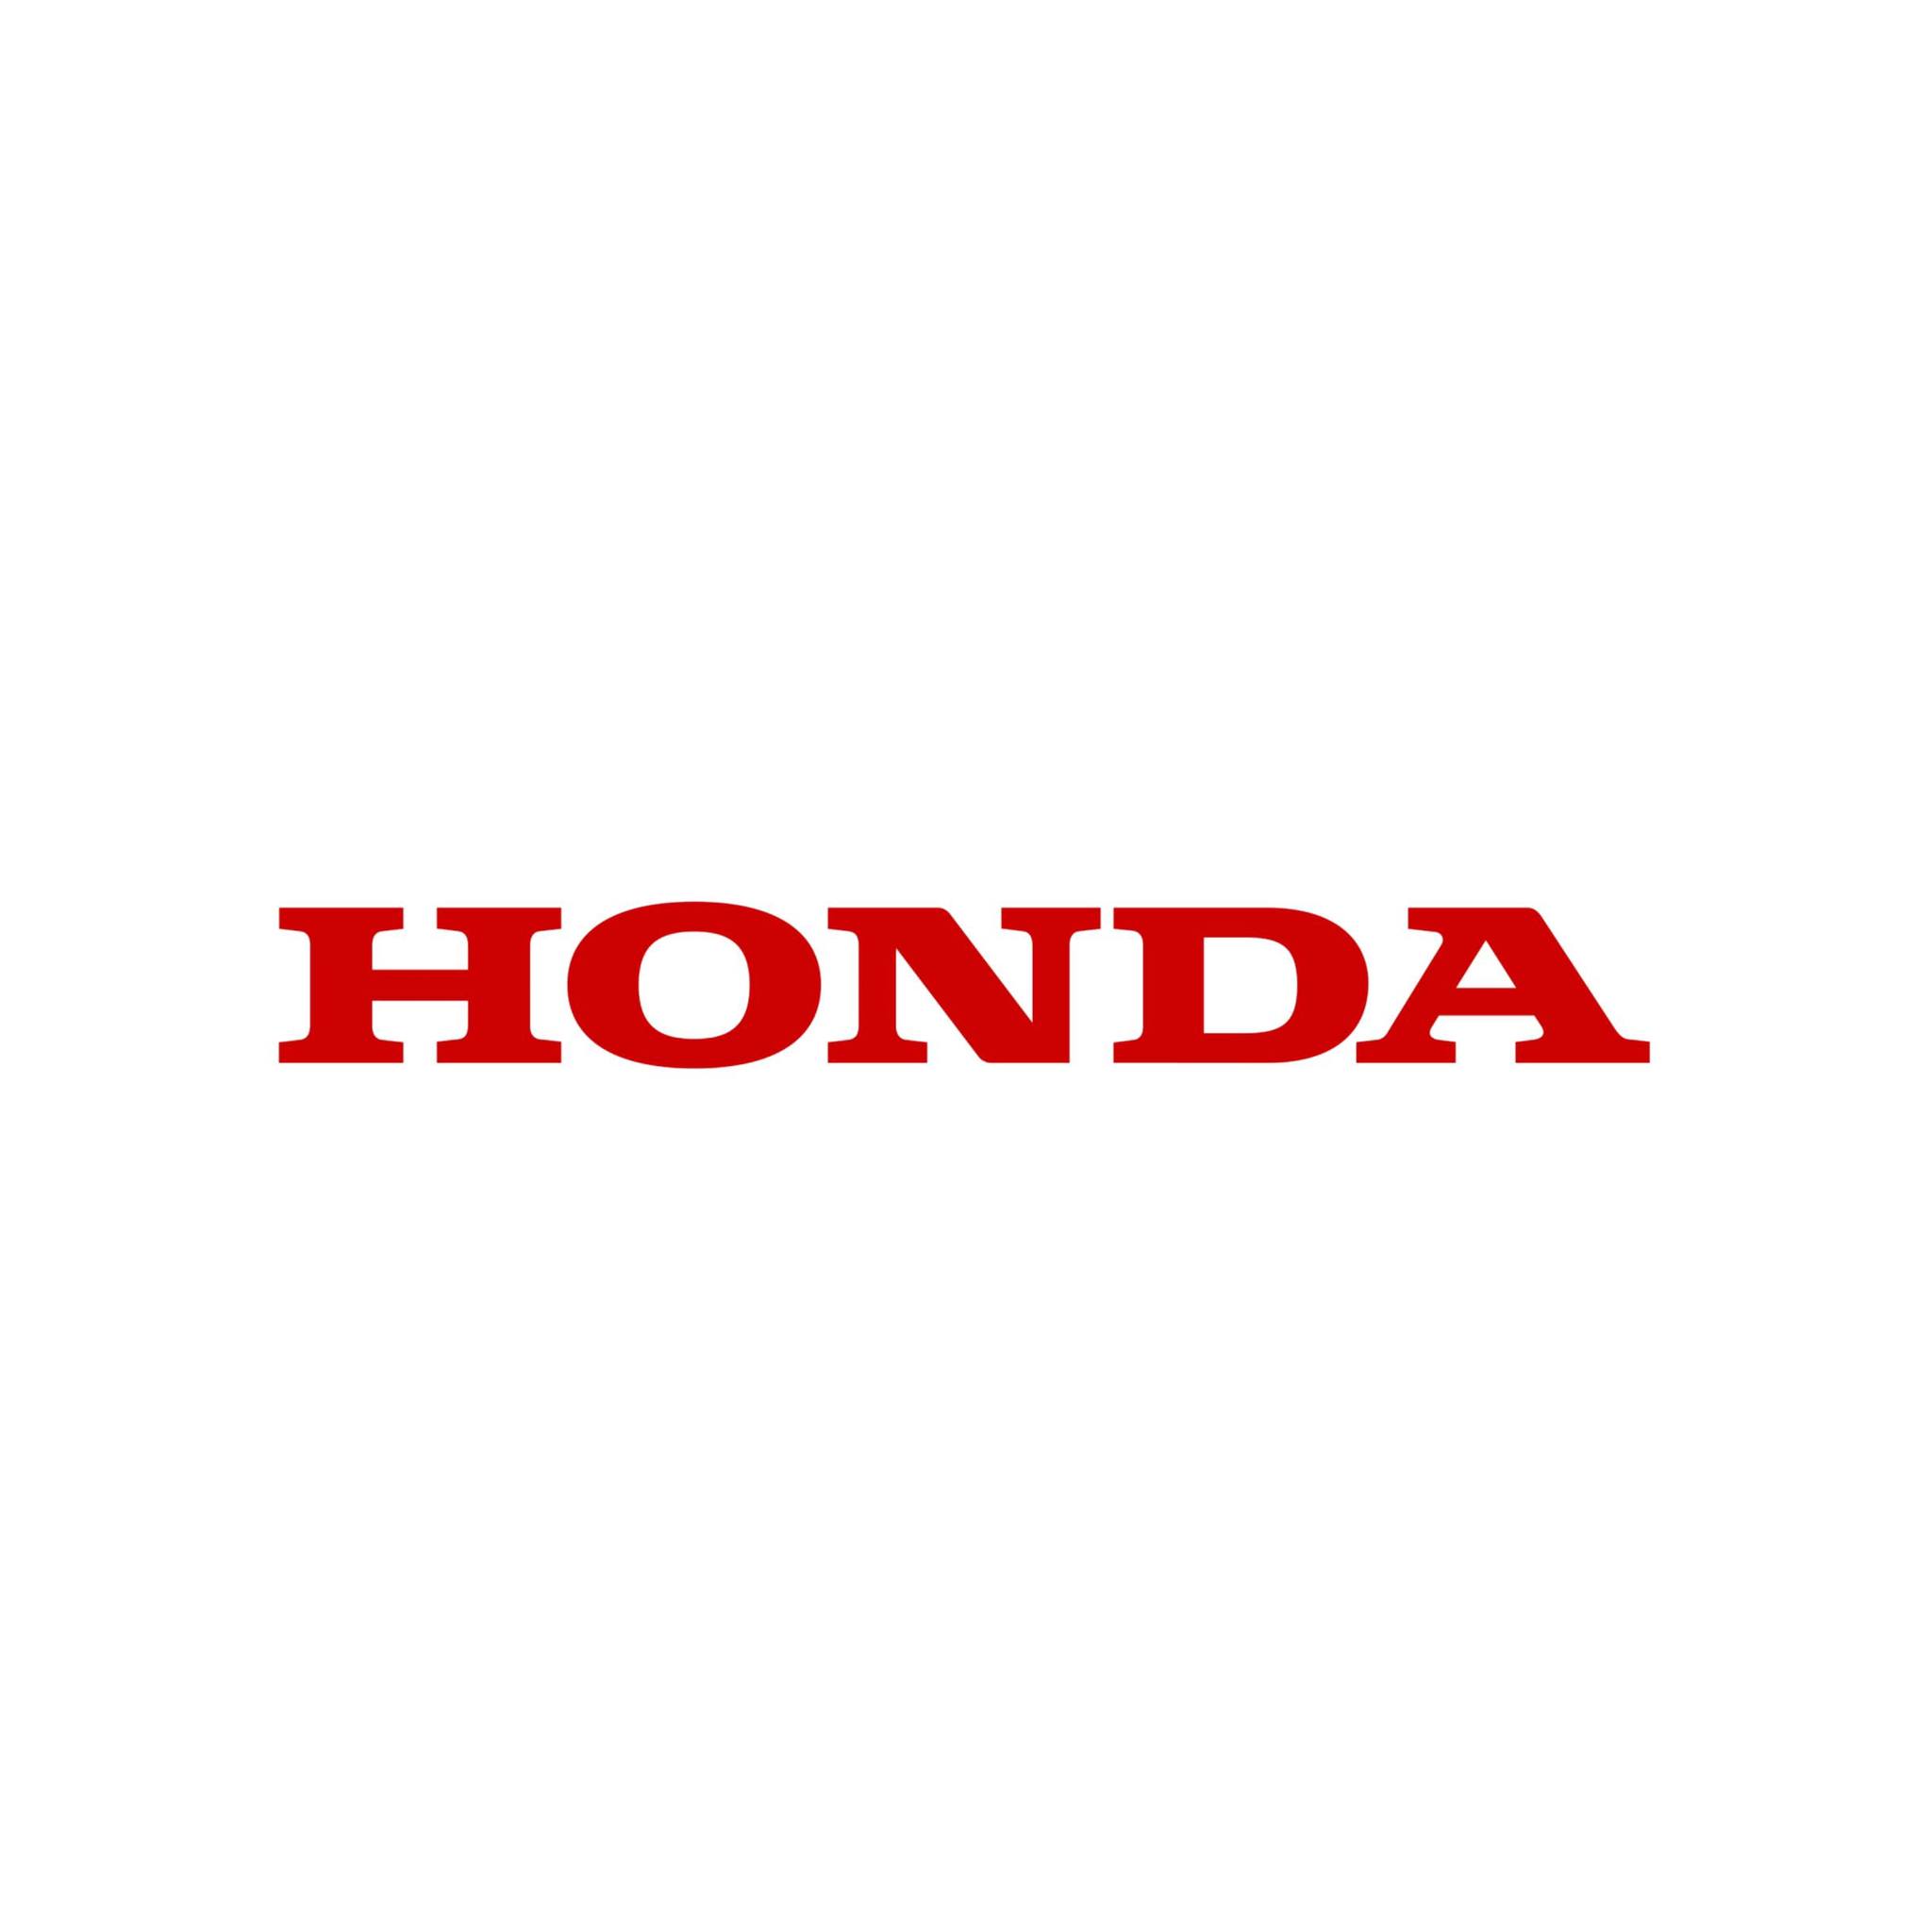 Honda Vietnam Company Limited